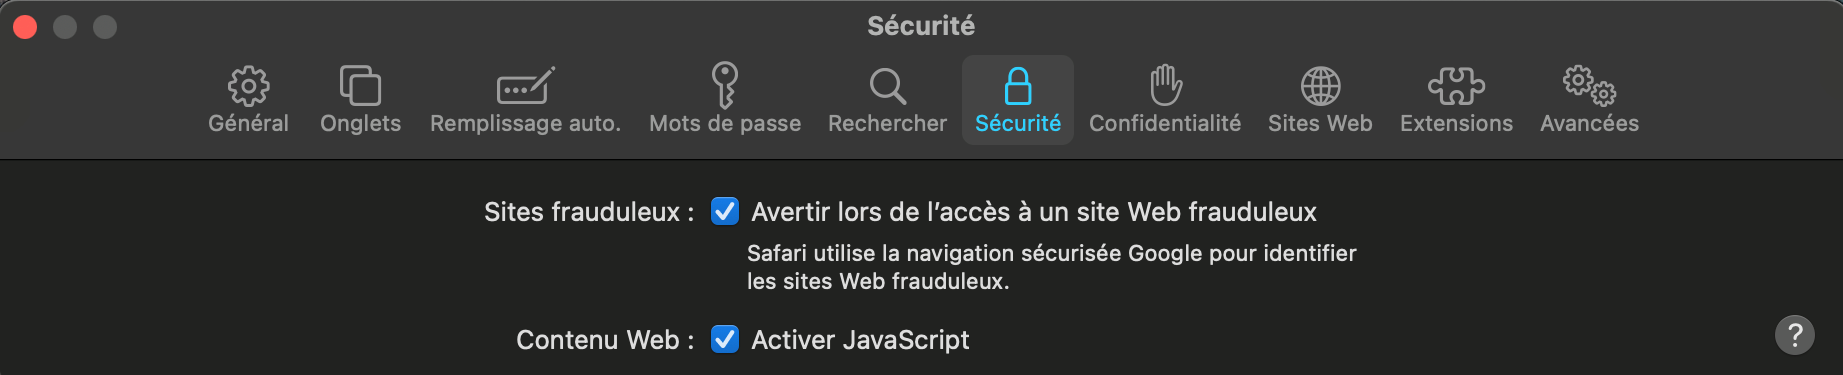 capture d'écran des paramètres de sécurité sur Safari